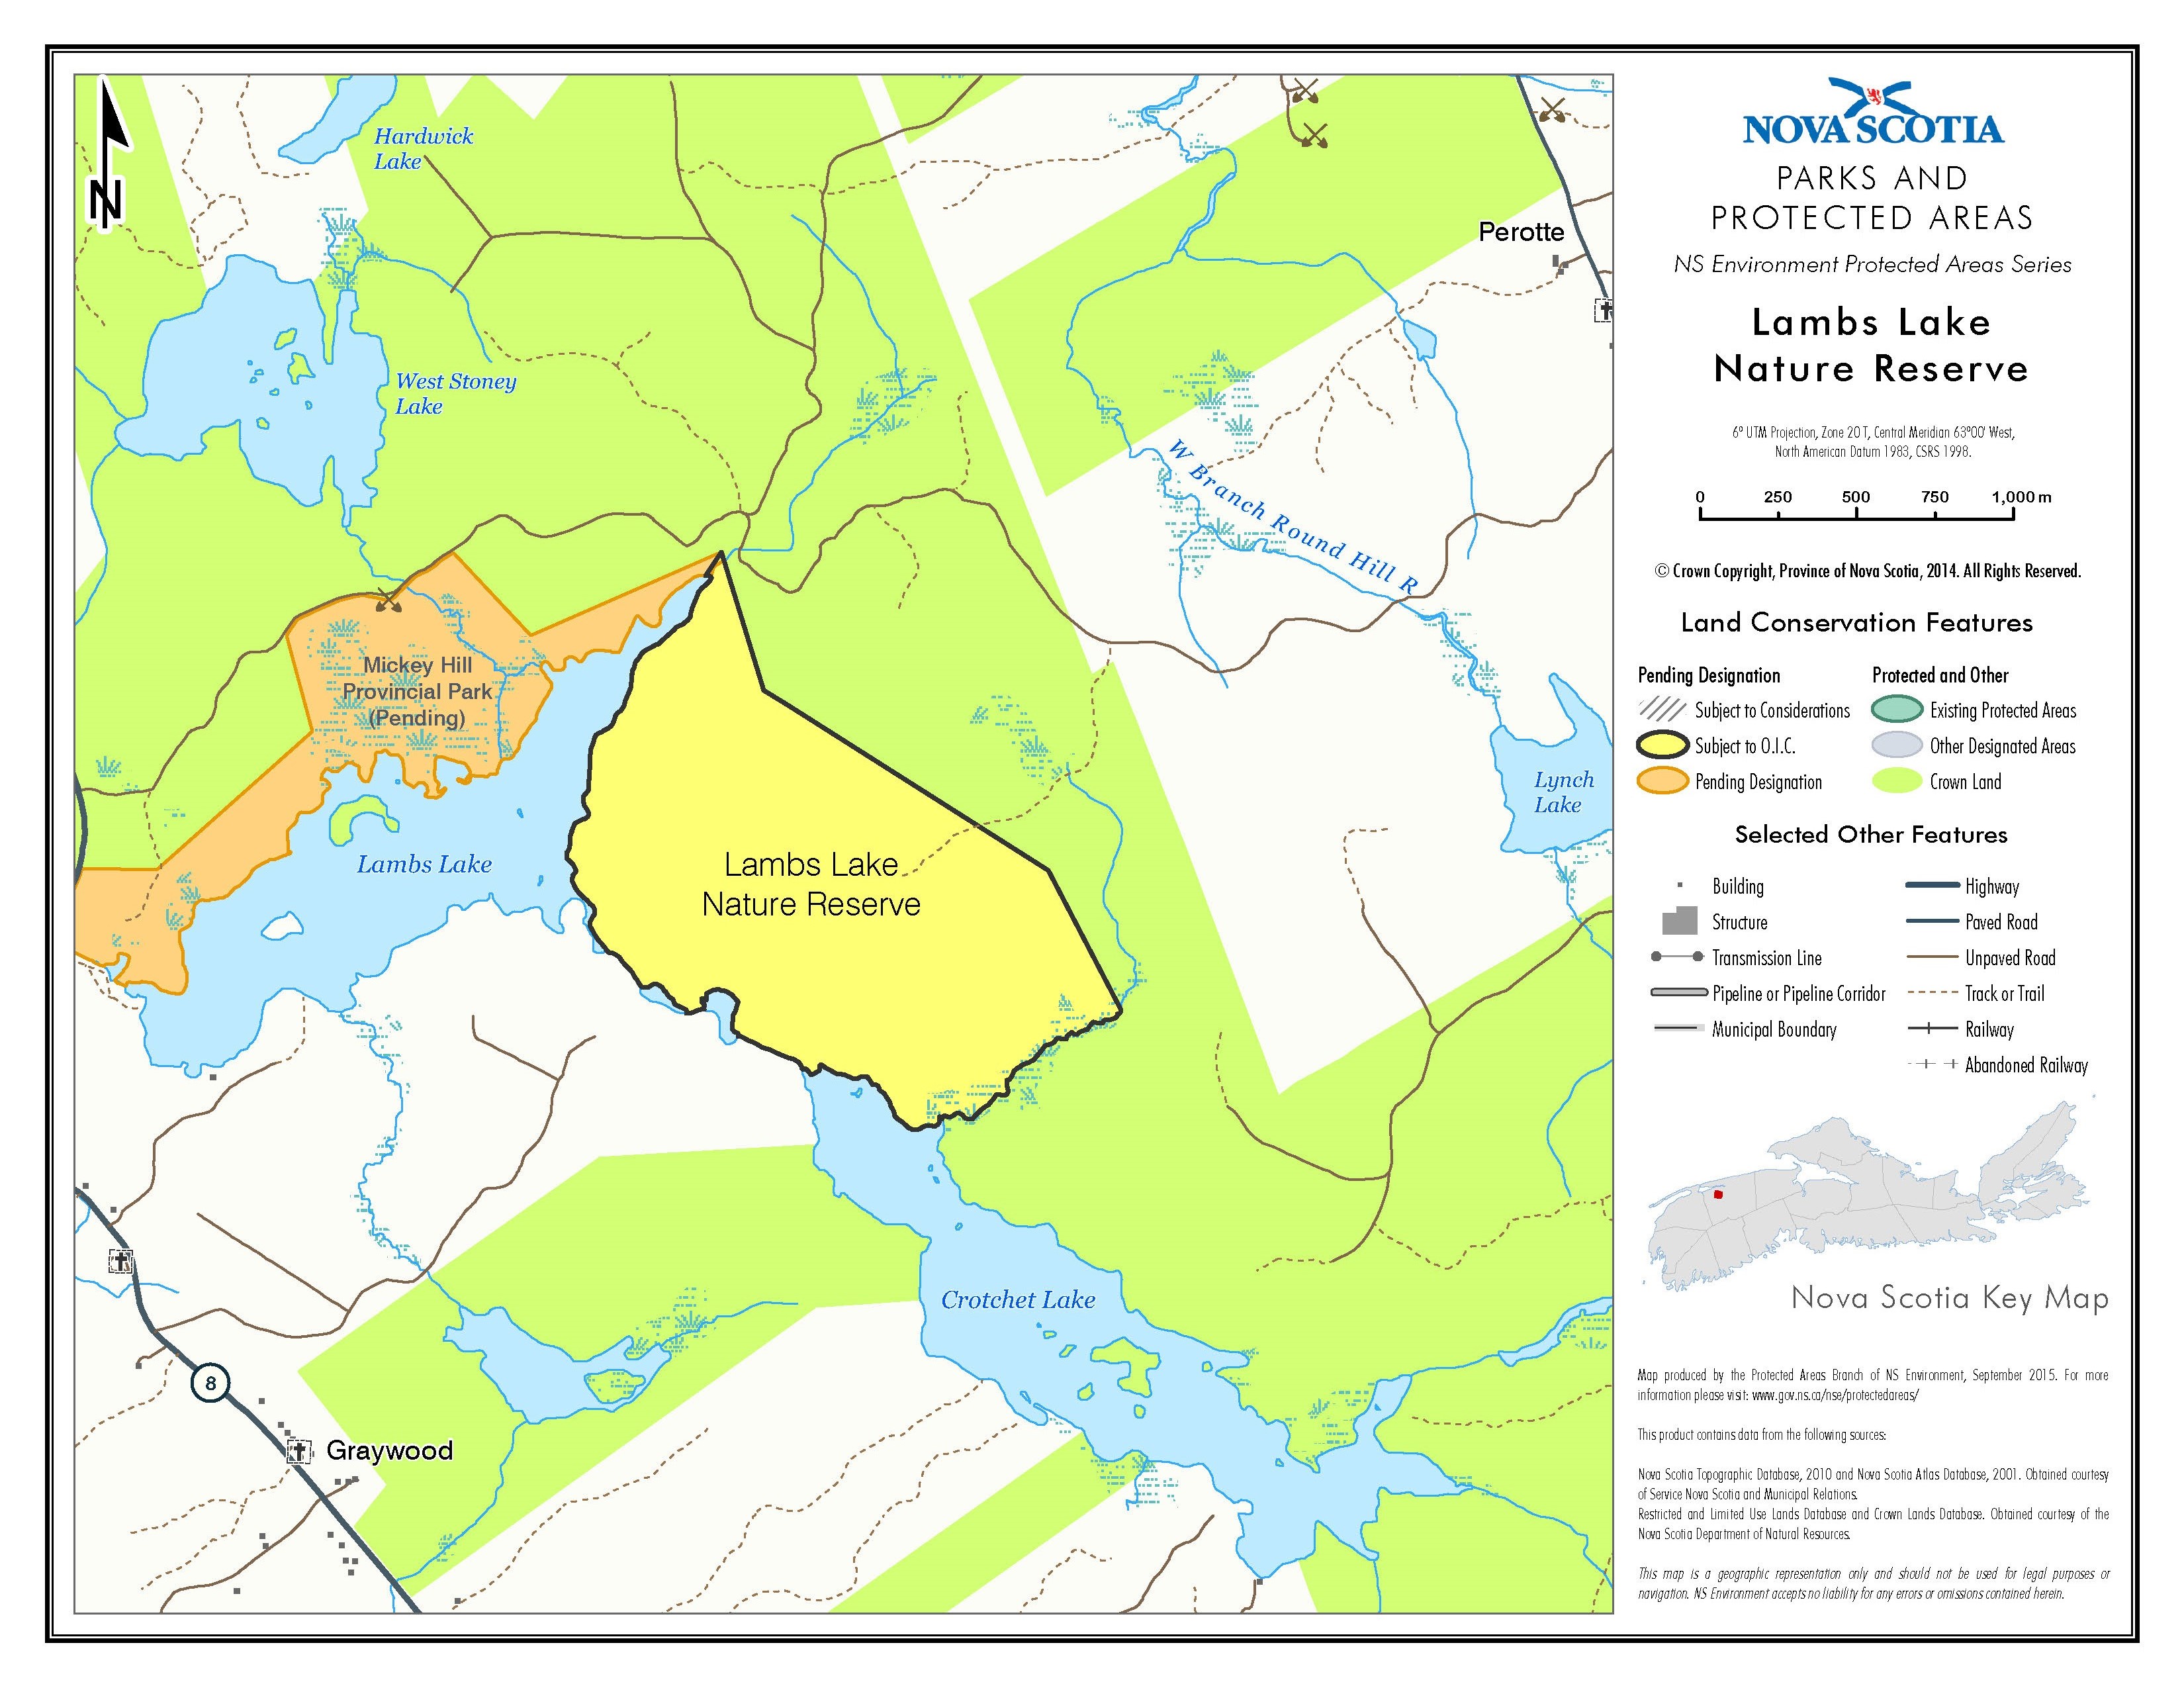 Approximate boundaries of Lambs Lake Nature Reserve